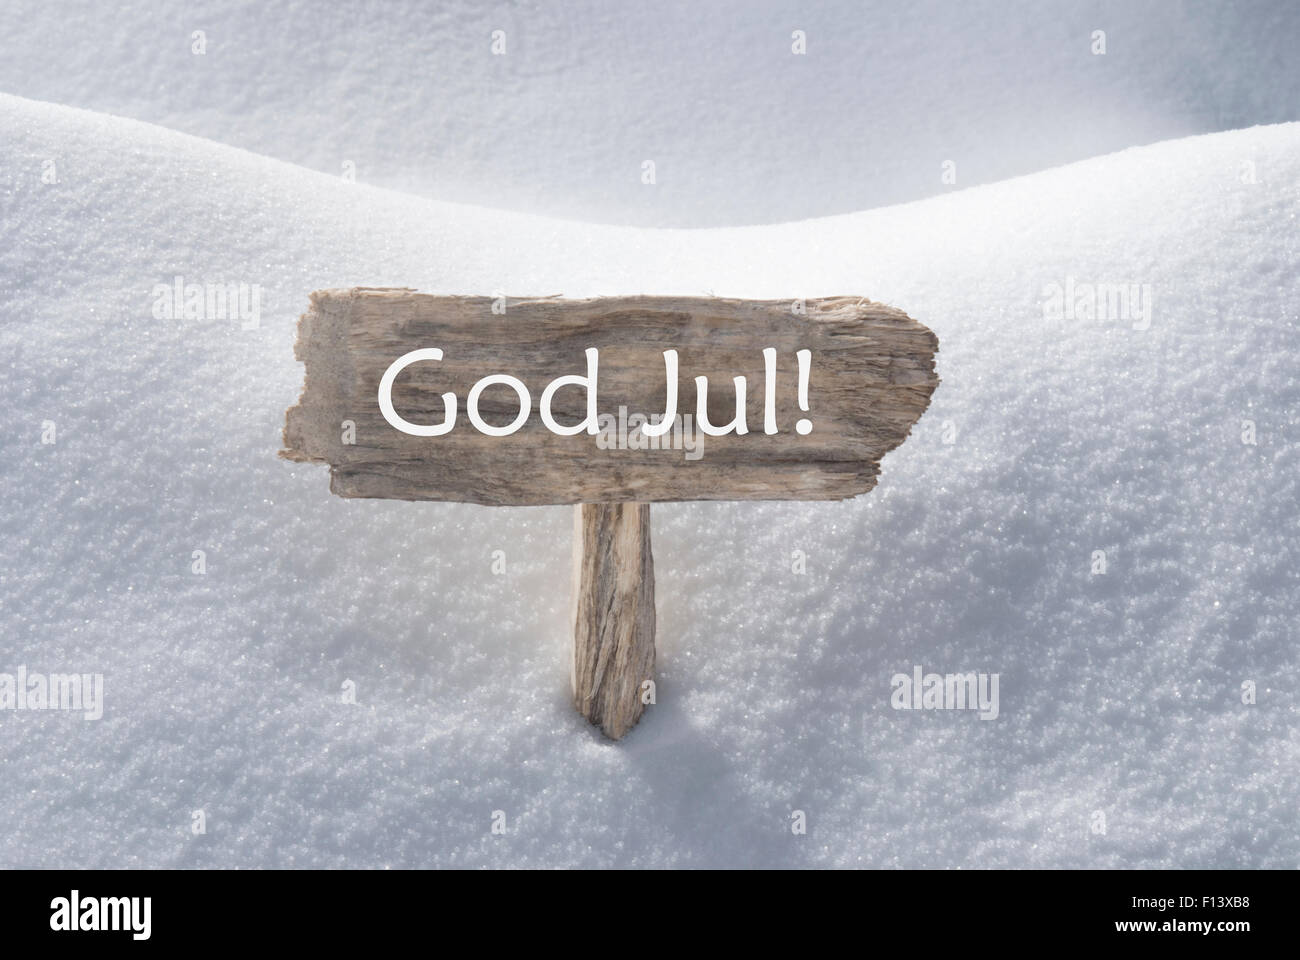 Signe de neige moyenne Juil Dieu Joyeux Noël Banque D'Images